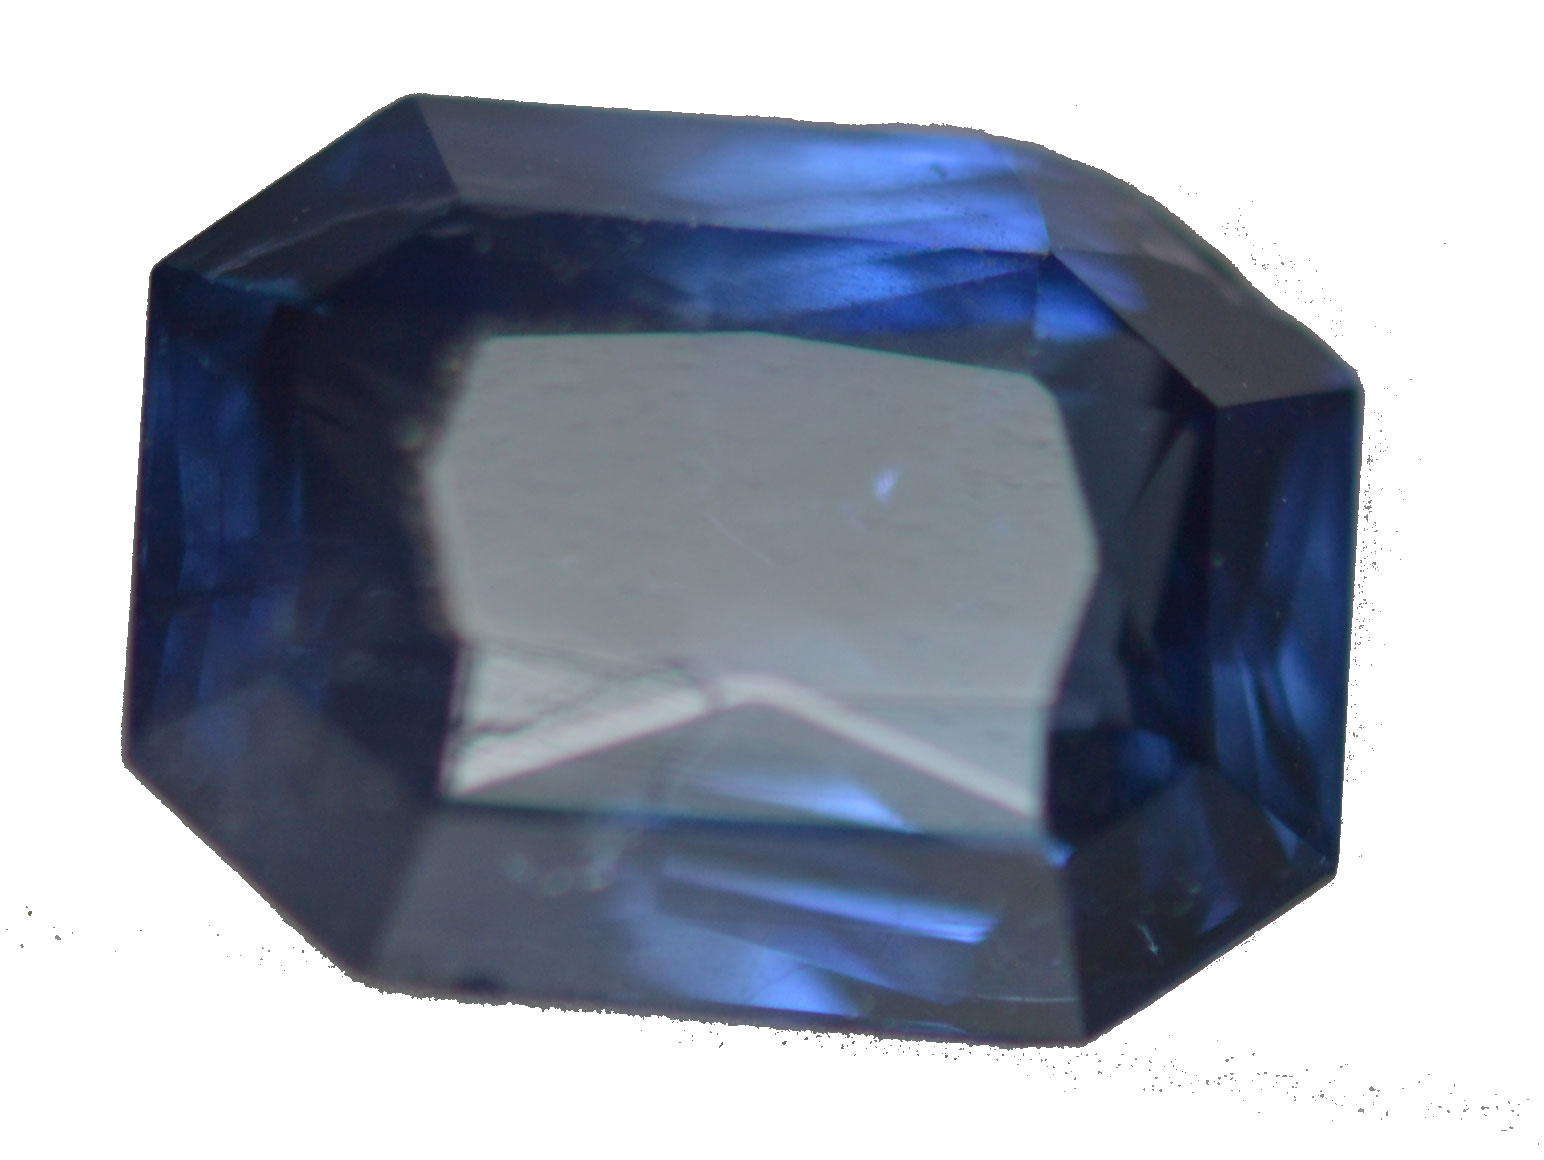 CGL Certified Unheated Blue Emerald Cut Sapphire 2.16 C8.22x6.17x4.32mm